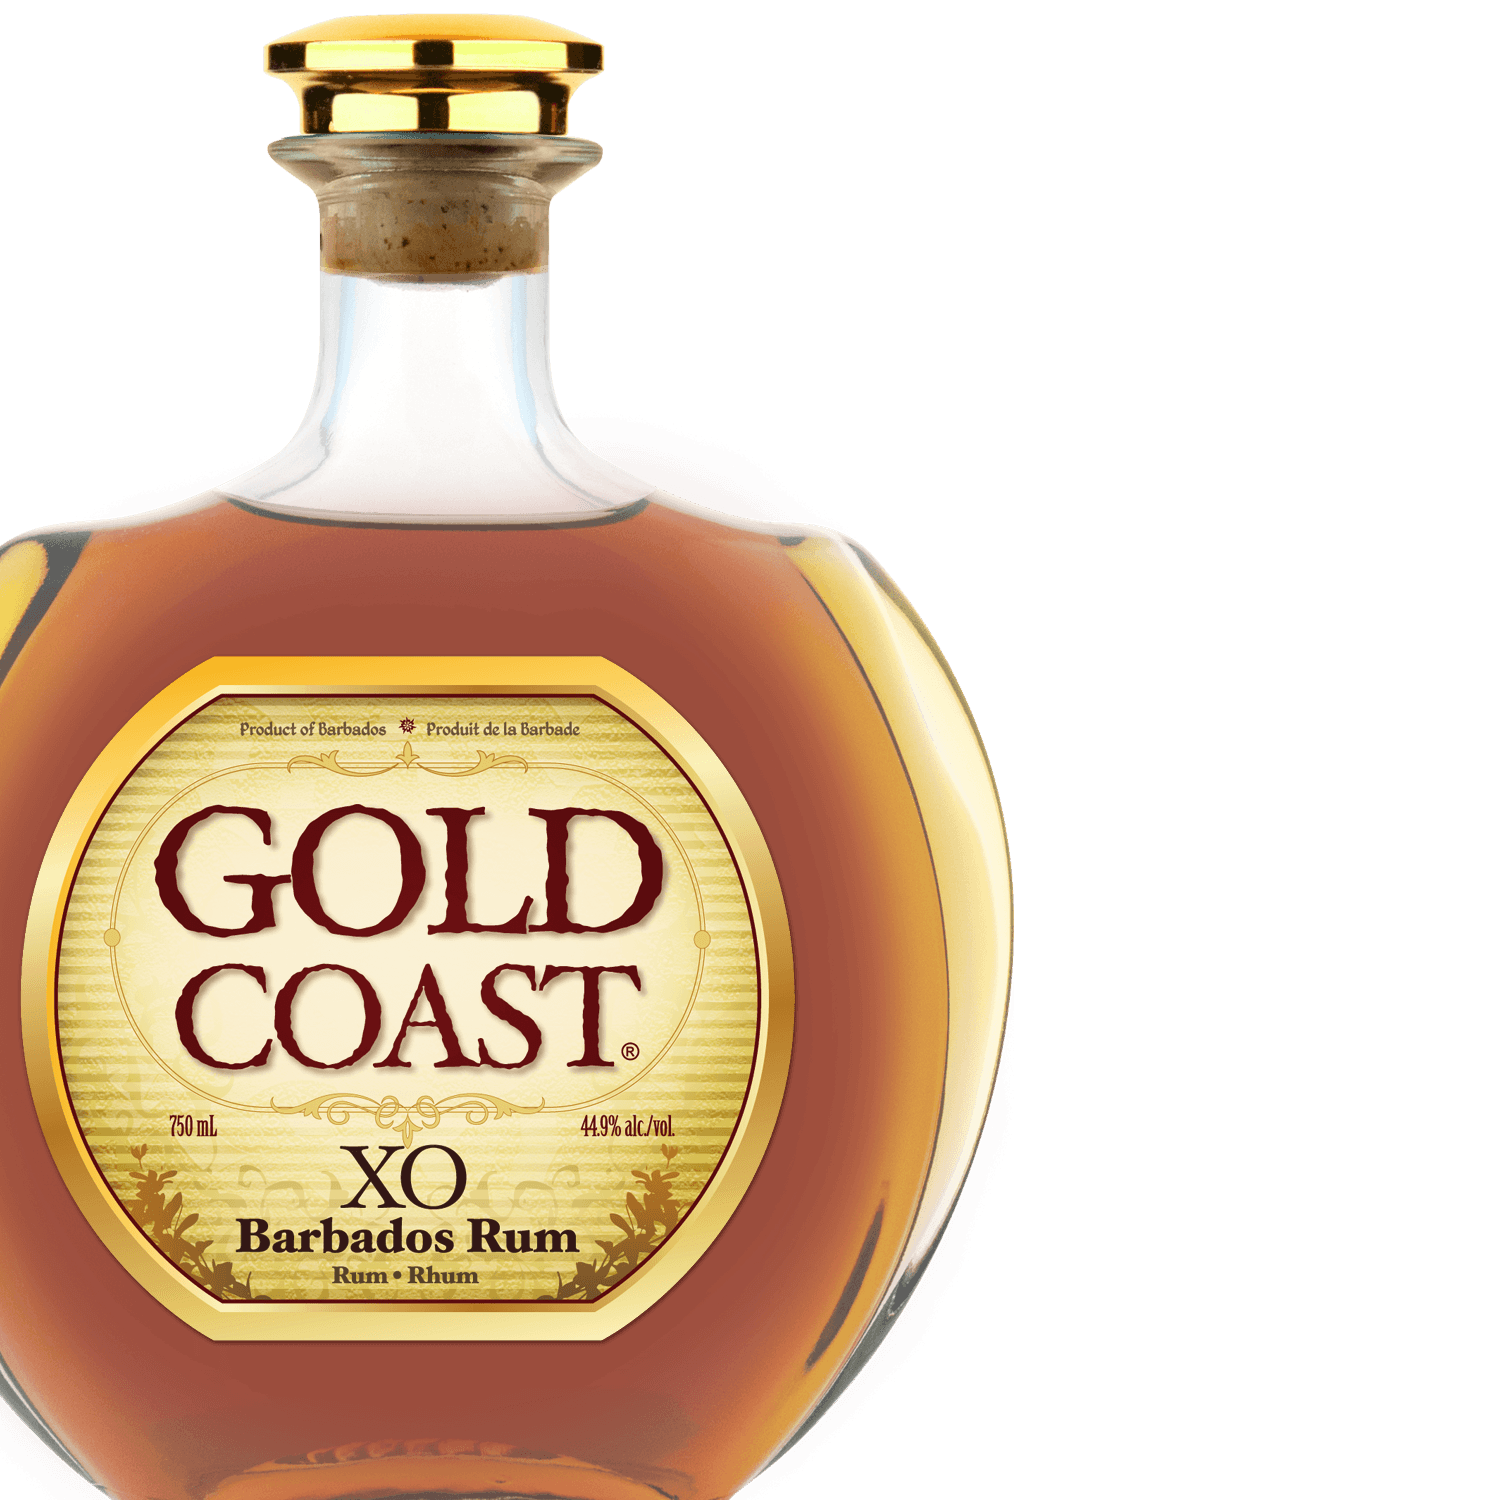 Gold Coast XO Barbados Rum distilled in Barbados